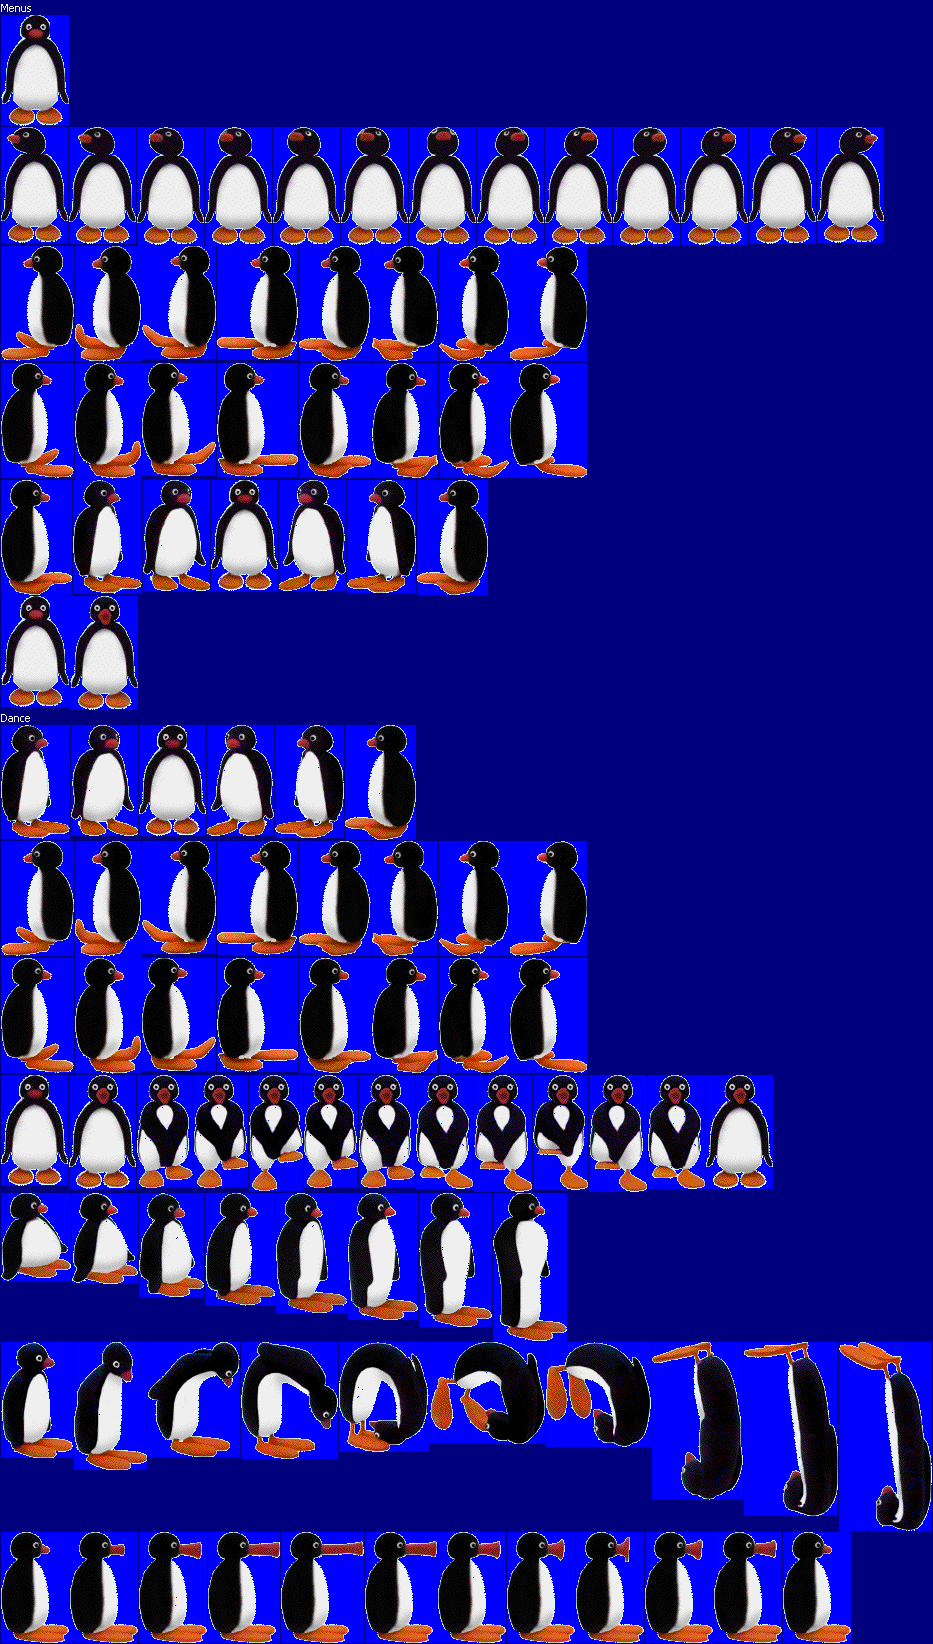 Pingu: A Barrel of Fun! - Pingu